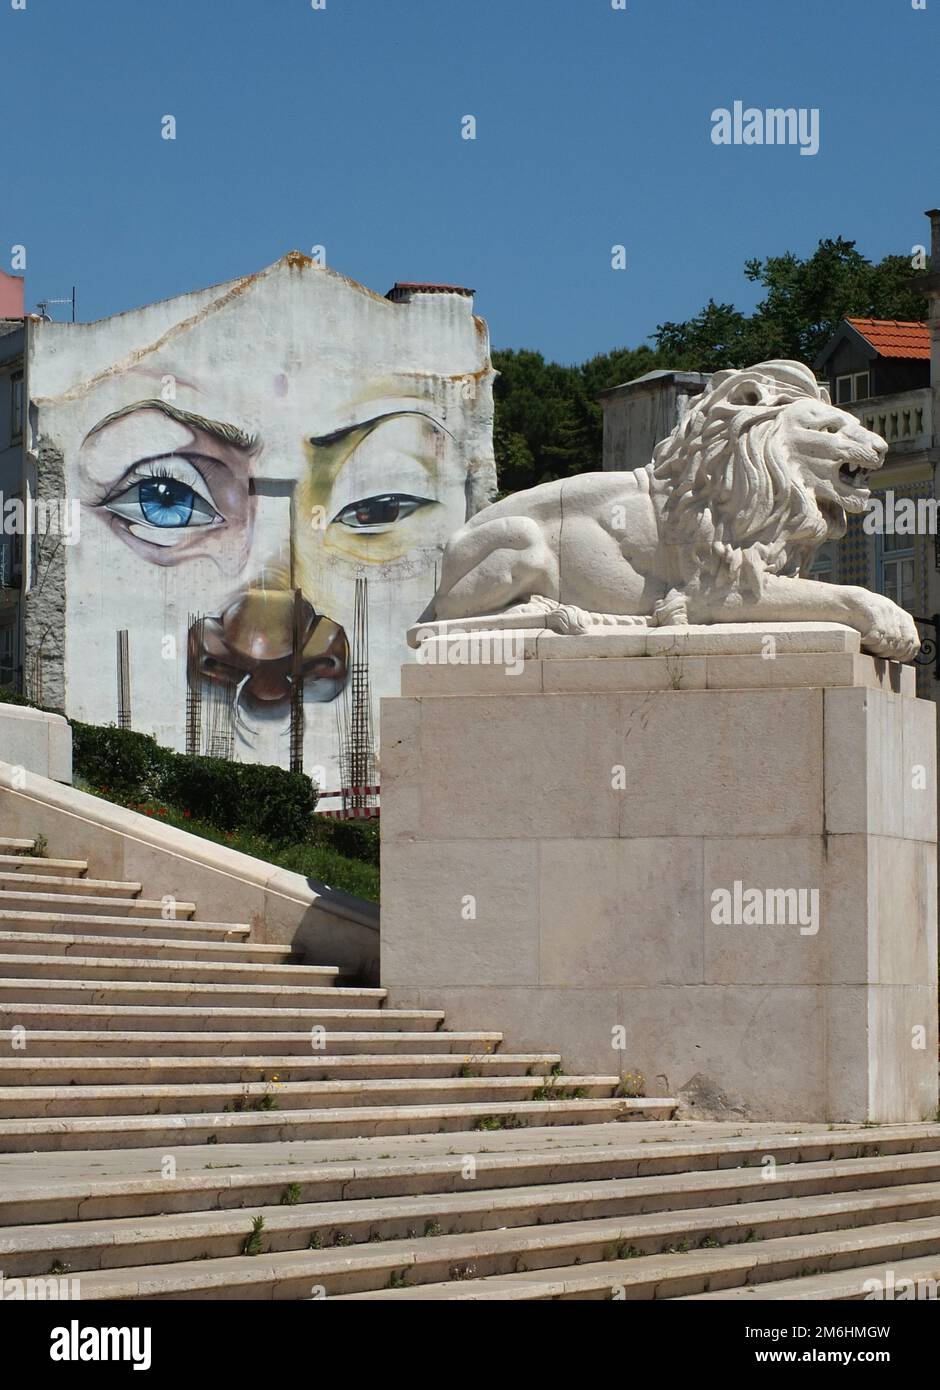 Statua del Leone presso l'edificio del governo e graffiti, Lisbona - Portogallo Foto Stock